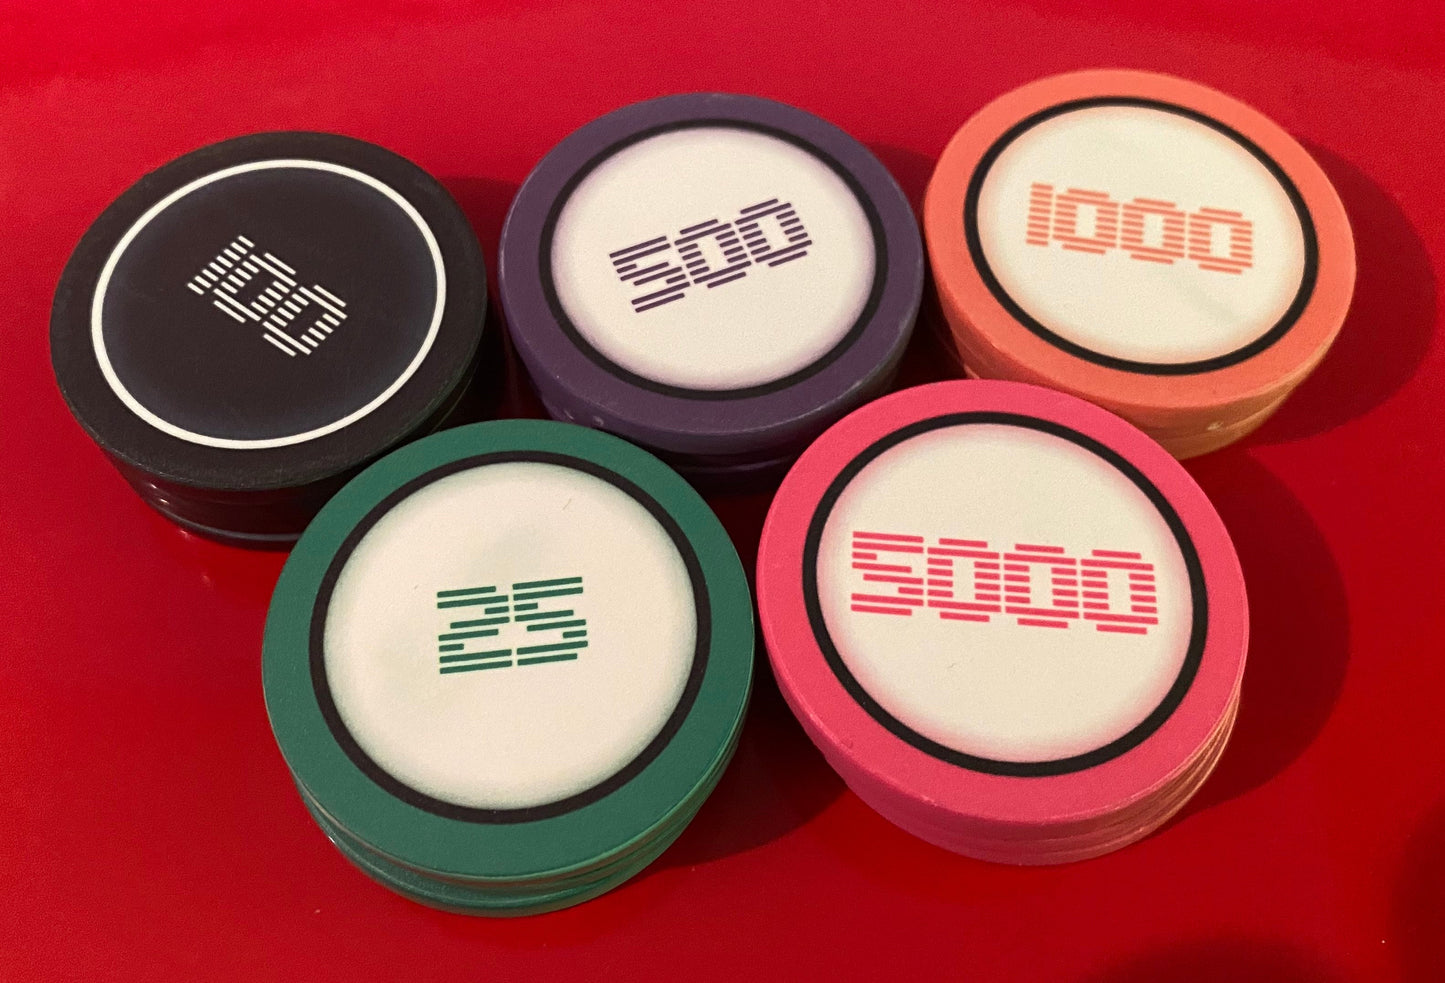 Custom Poker Chips [43mm]